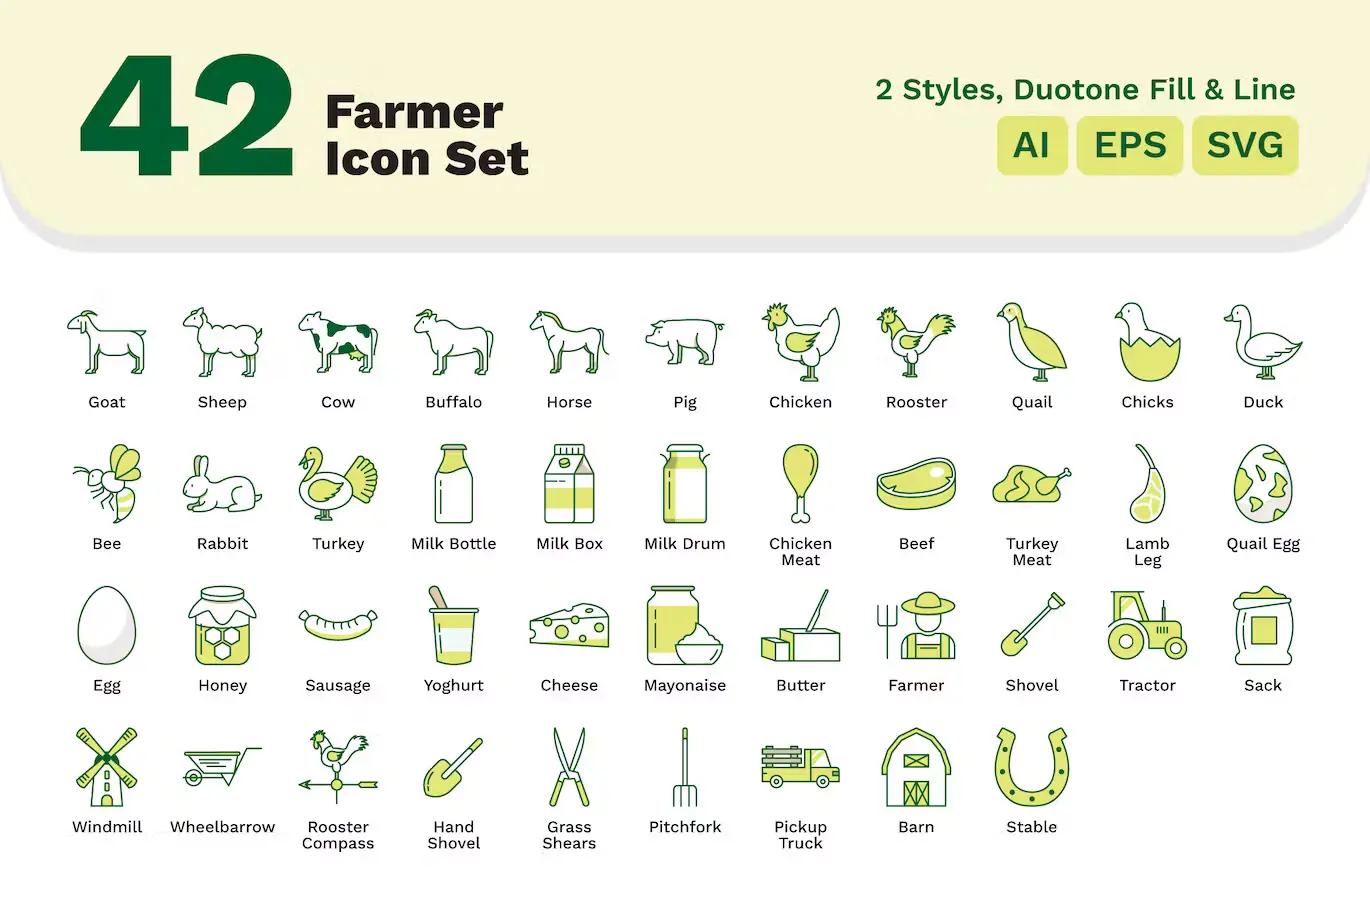 42 Farm Icons Set - AI EPS SVG